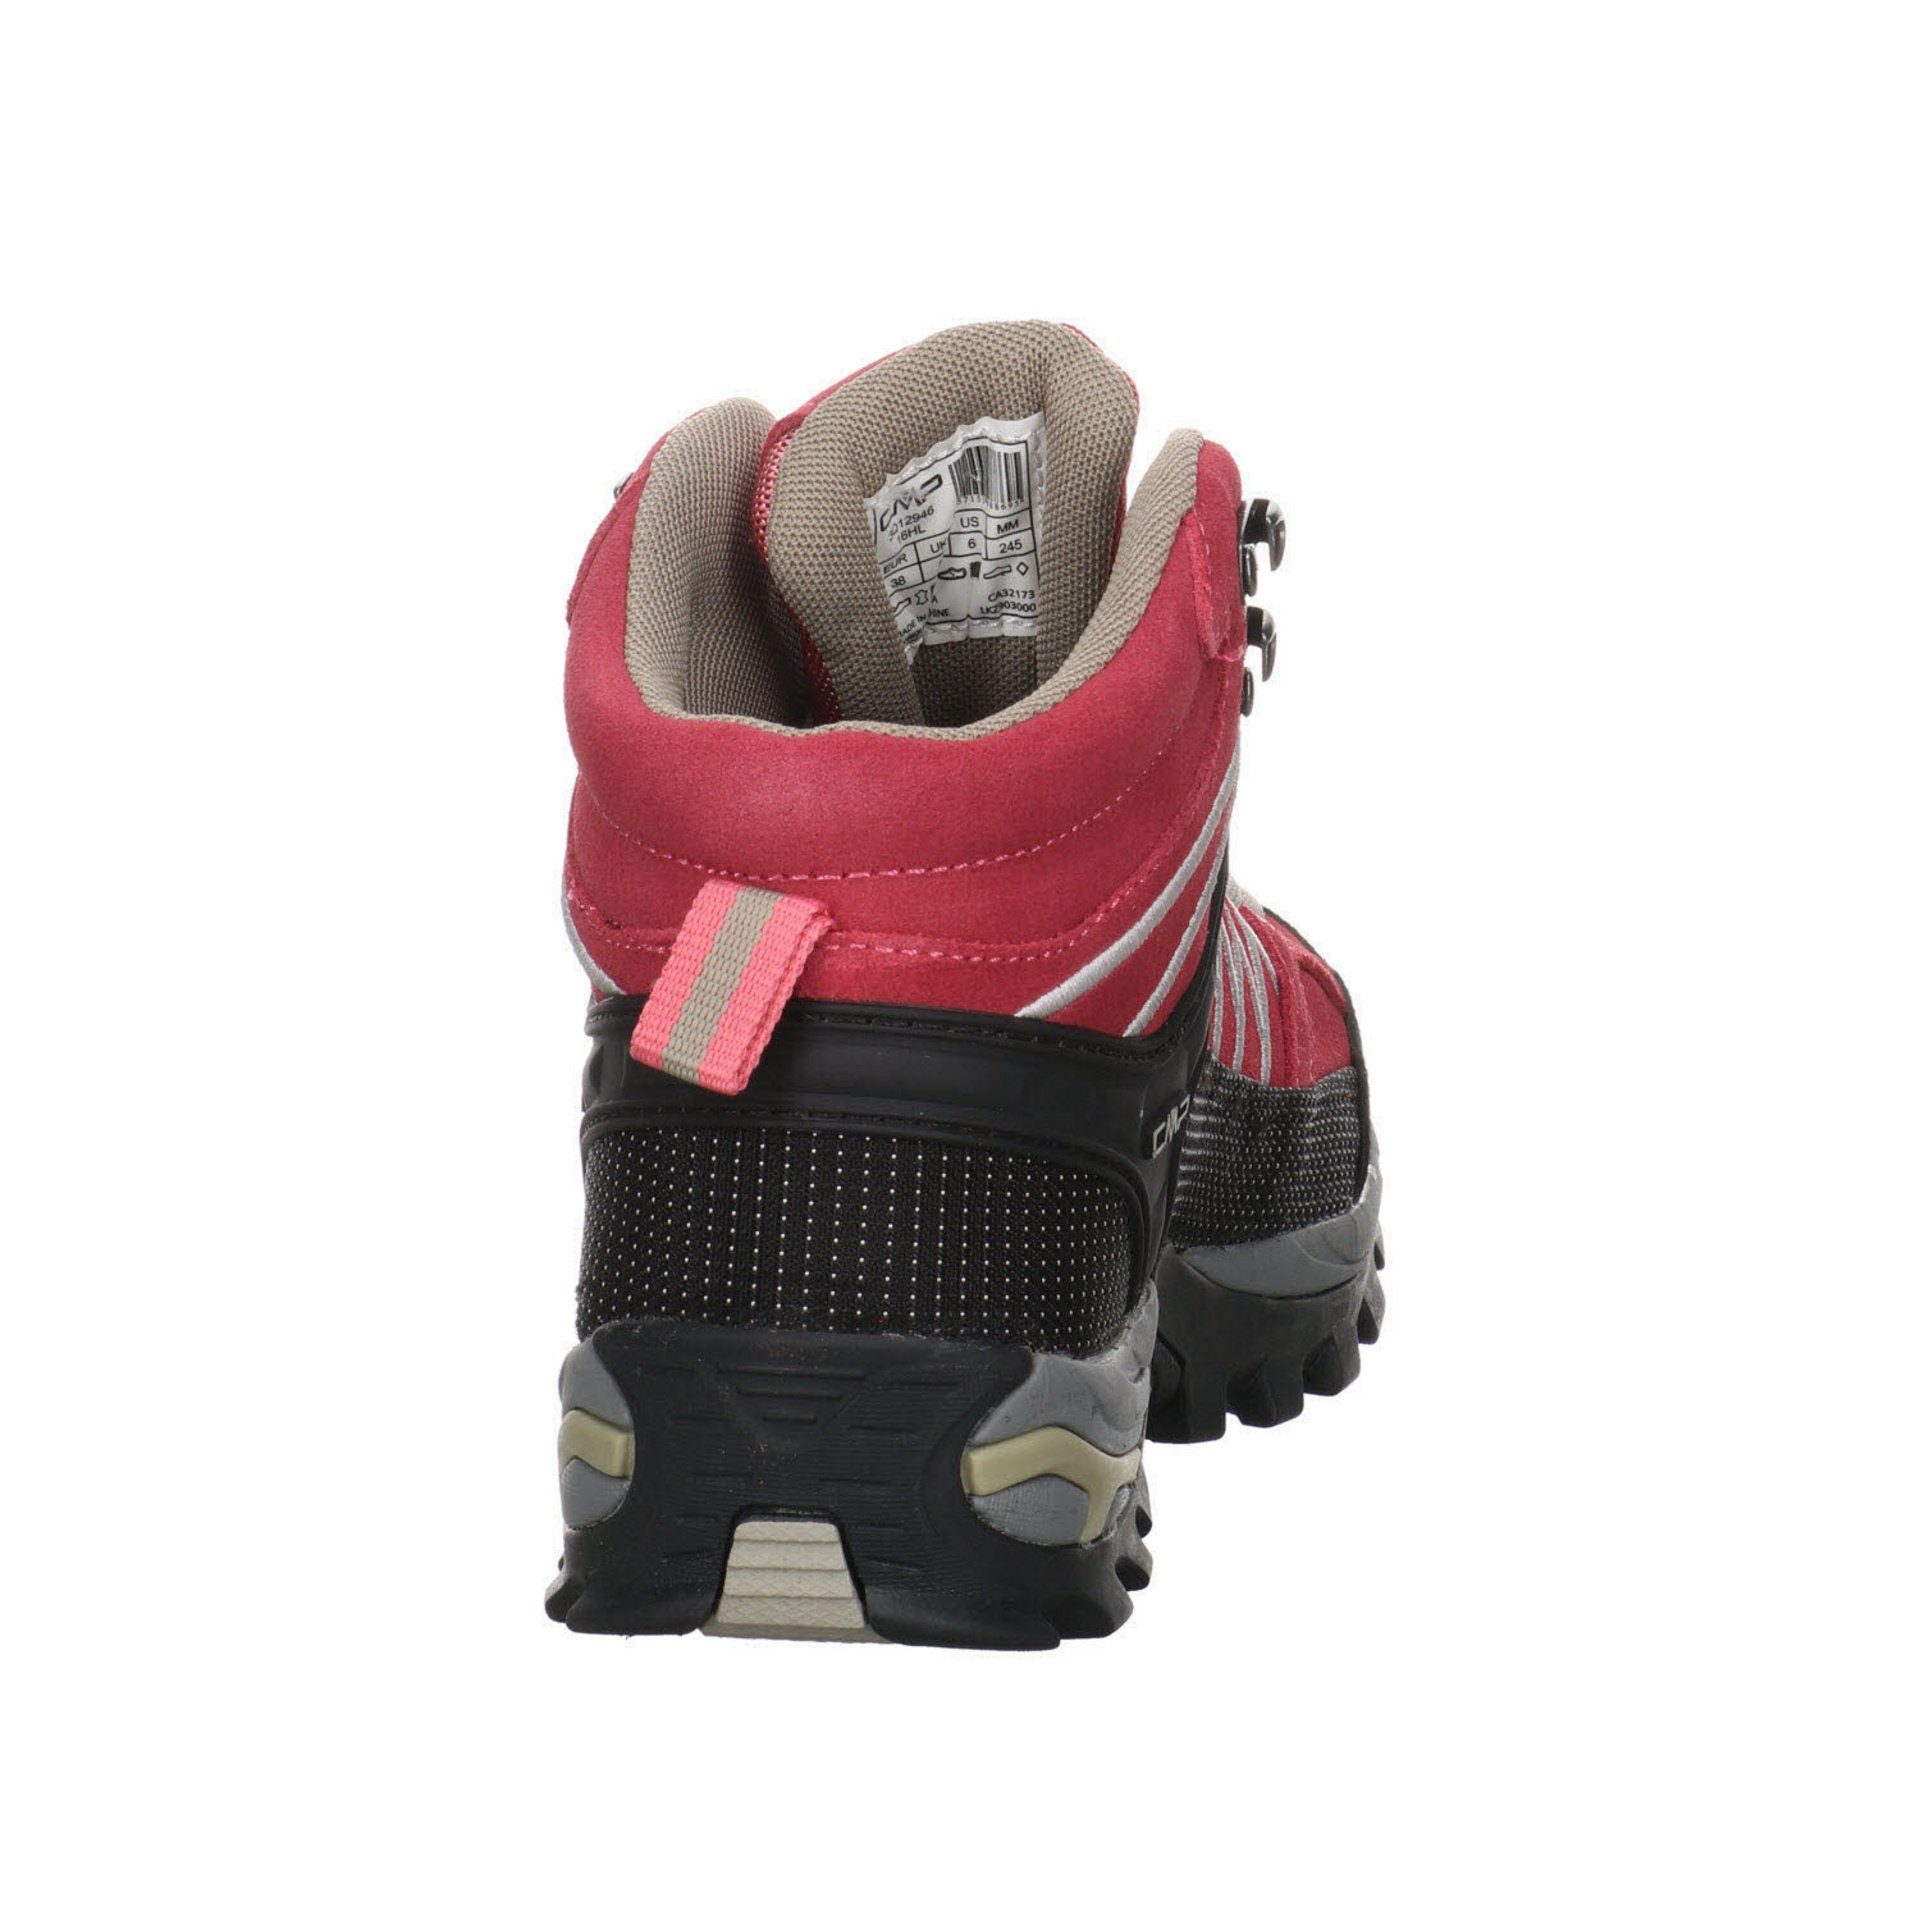 Schuhe Outdoorschuh Leder-/Textilkombination Outdoor Rigel ROSE-SAND Damen Mid CMP Outdoorschuh